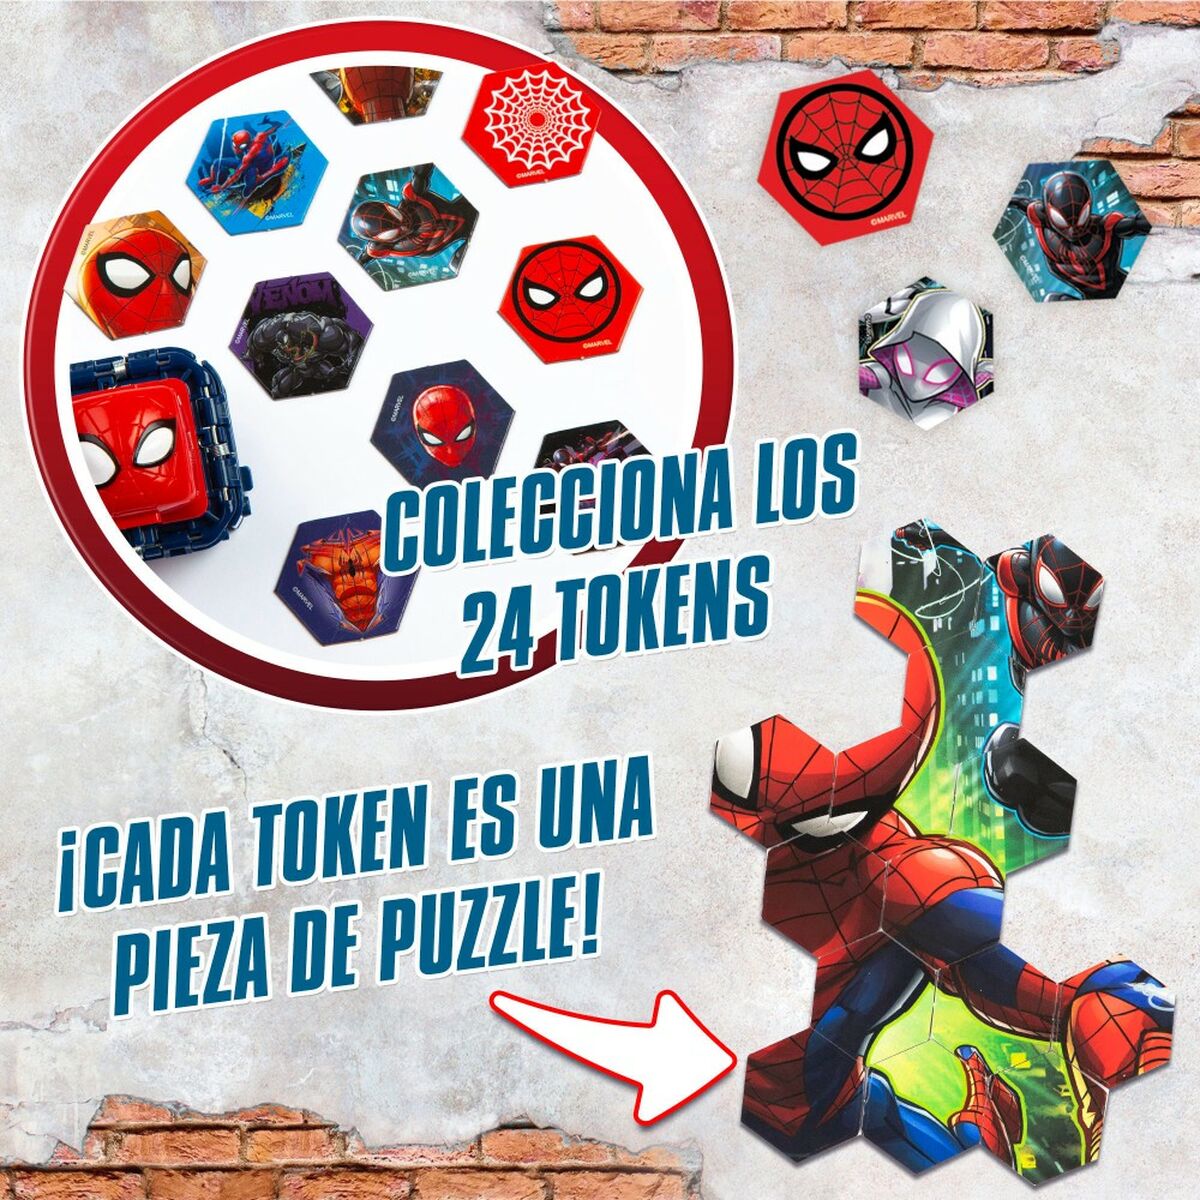 Skicklighetsspel Spider-Man Battle Cubes (12 antal)-Leksaker och spel, Spel och tillbehör-Spider-Man-peaceofhome.se